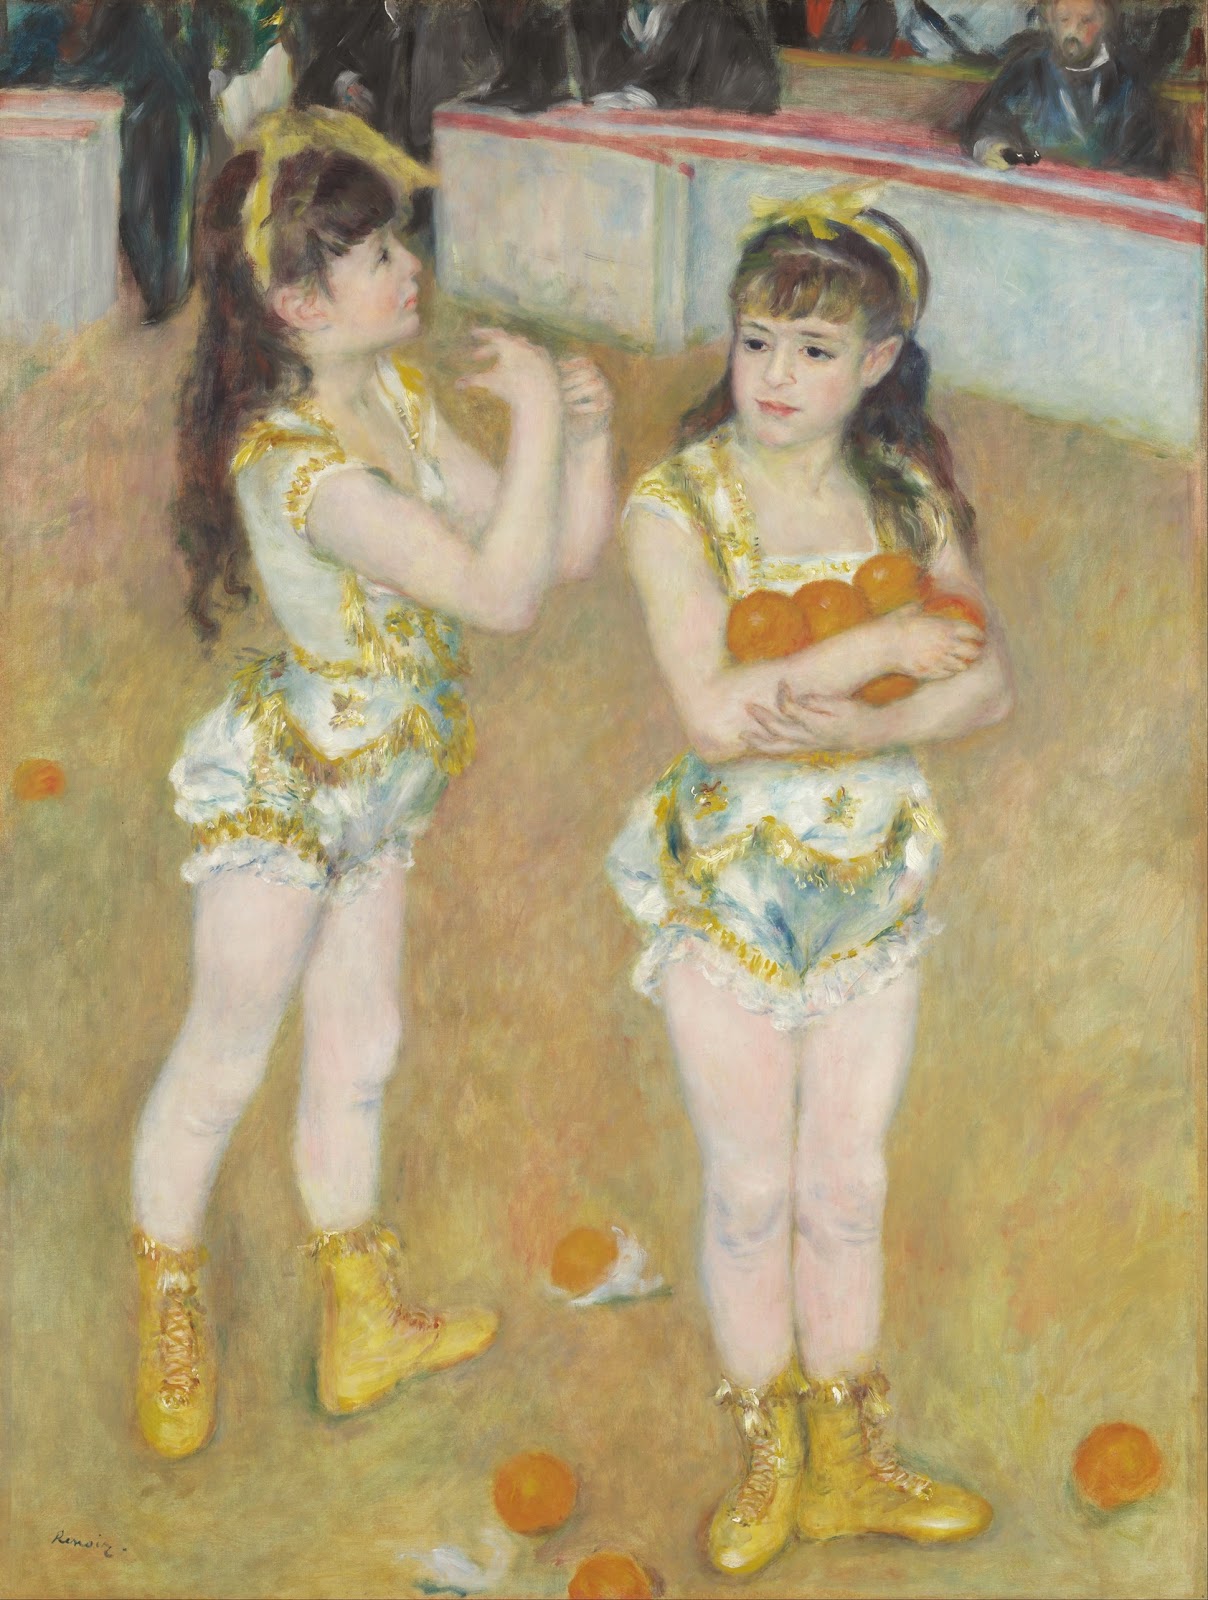 Pierre+Auguste+Renoir-1841-1-19 (256).jpg